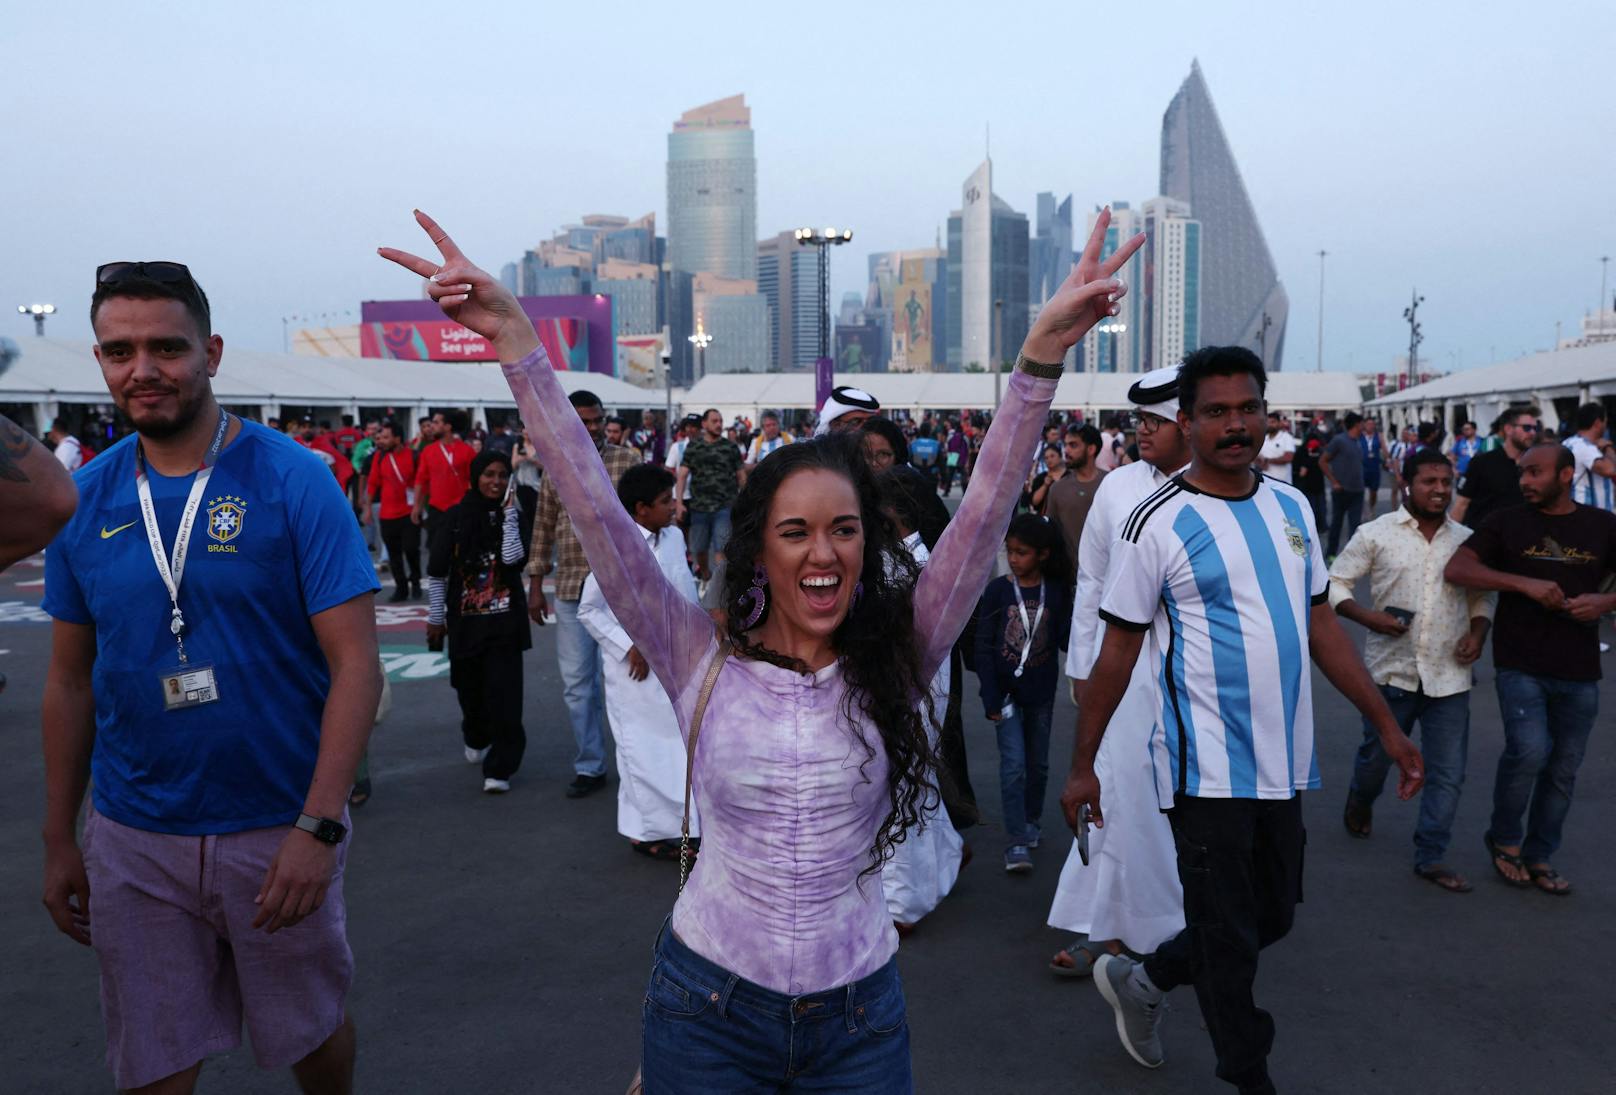 So schrill und schön sind die Fans bei der WM in Katar